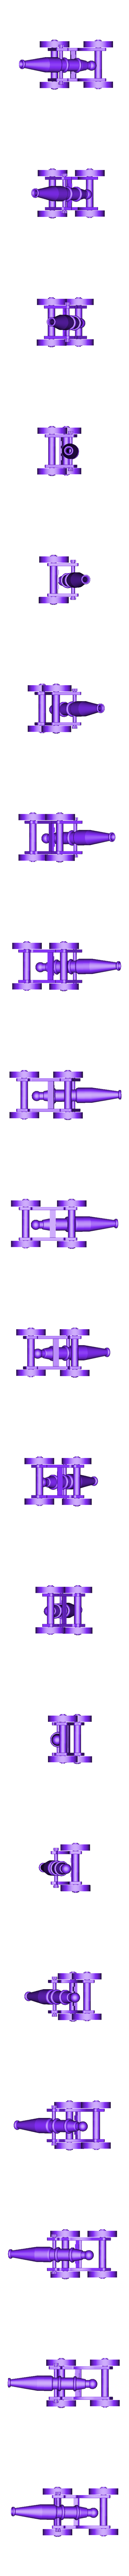 Cannon complete.stl Descargar archivo STL cañón de juguete • Diseño para imprimir en 3D, Gabbi_Card